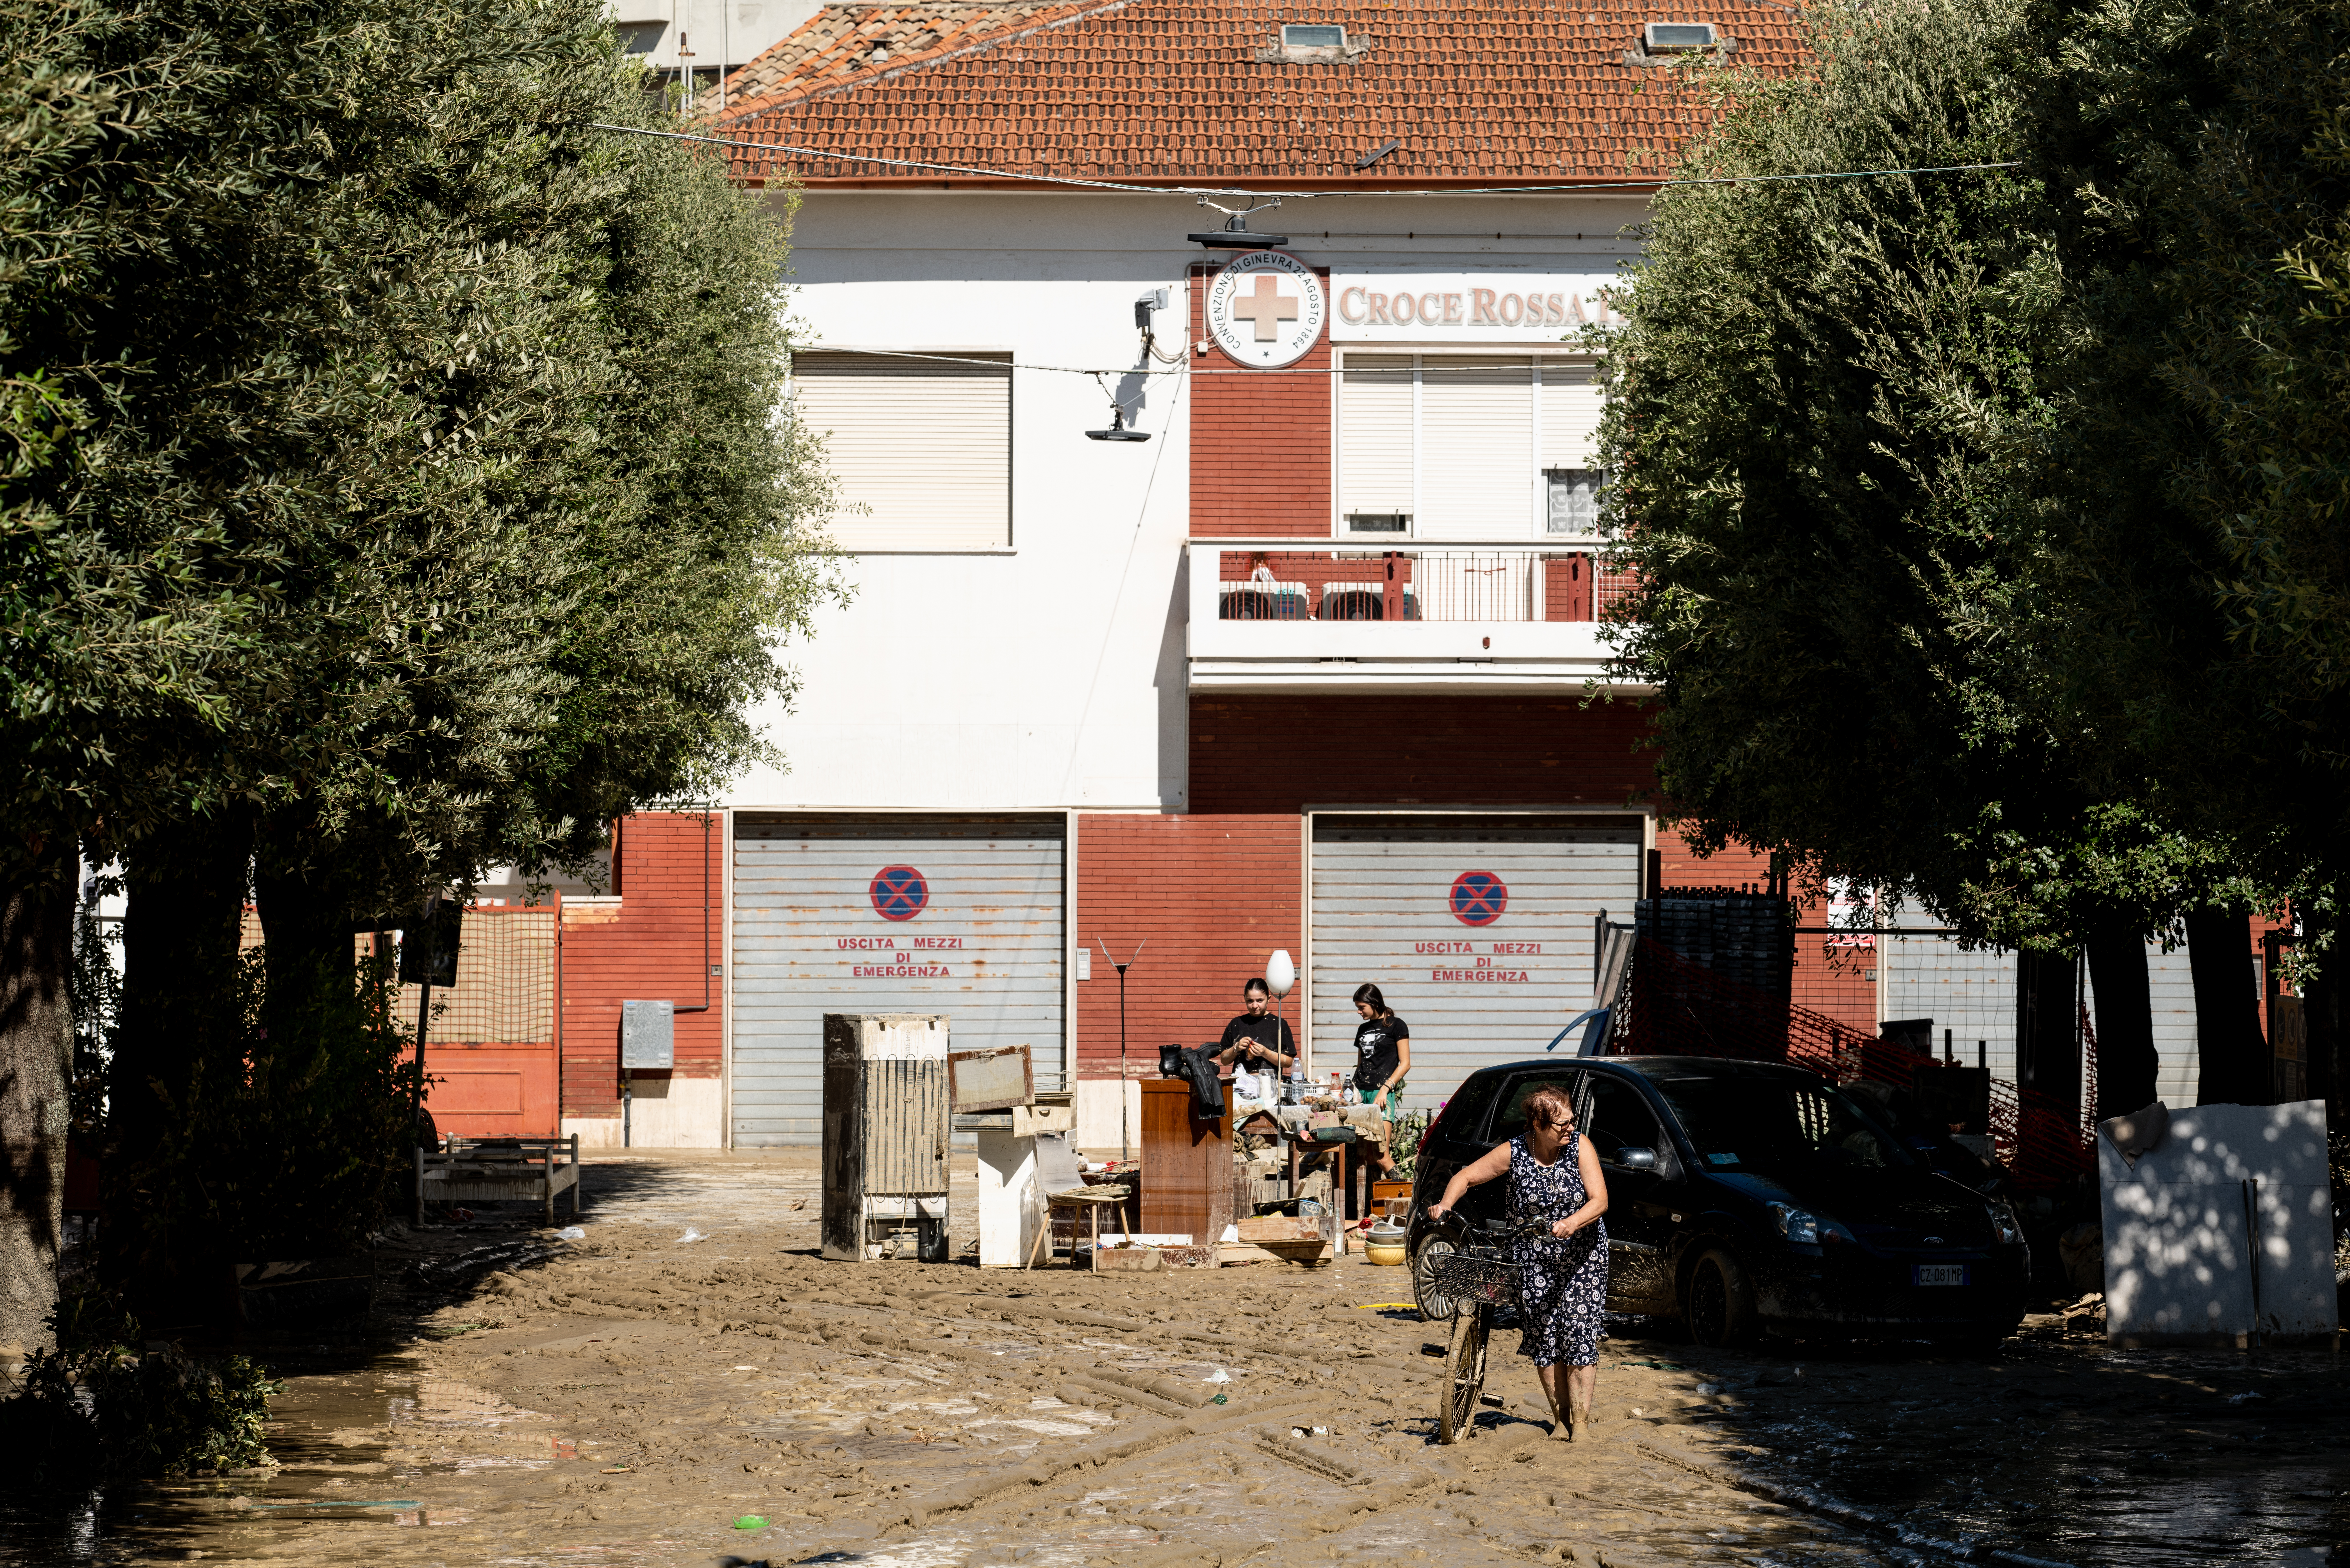 Con la raccolta fondi Anso, al via i lavori di ripristino nella sede Croce Rossa di Senigallia devastata dall’alluvione